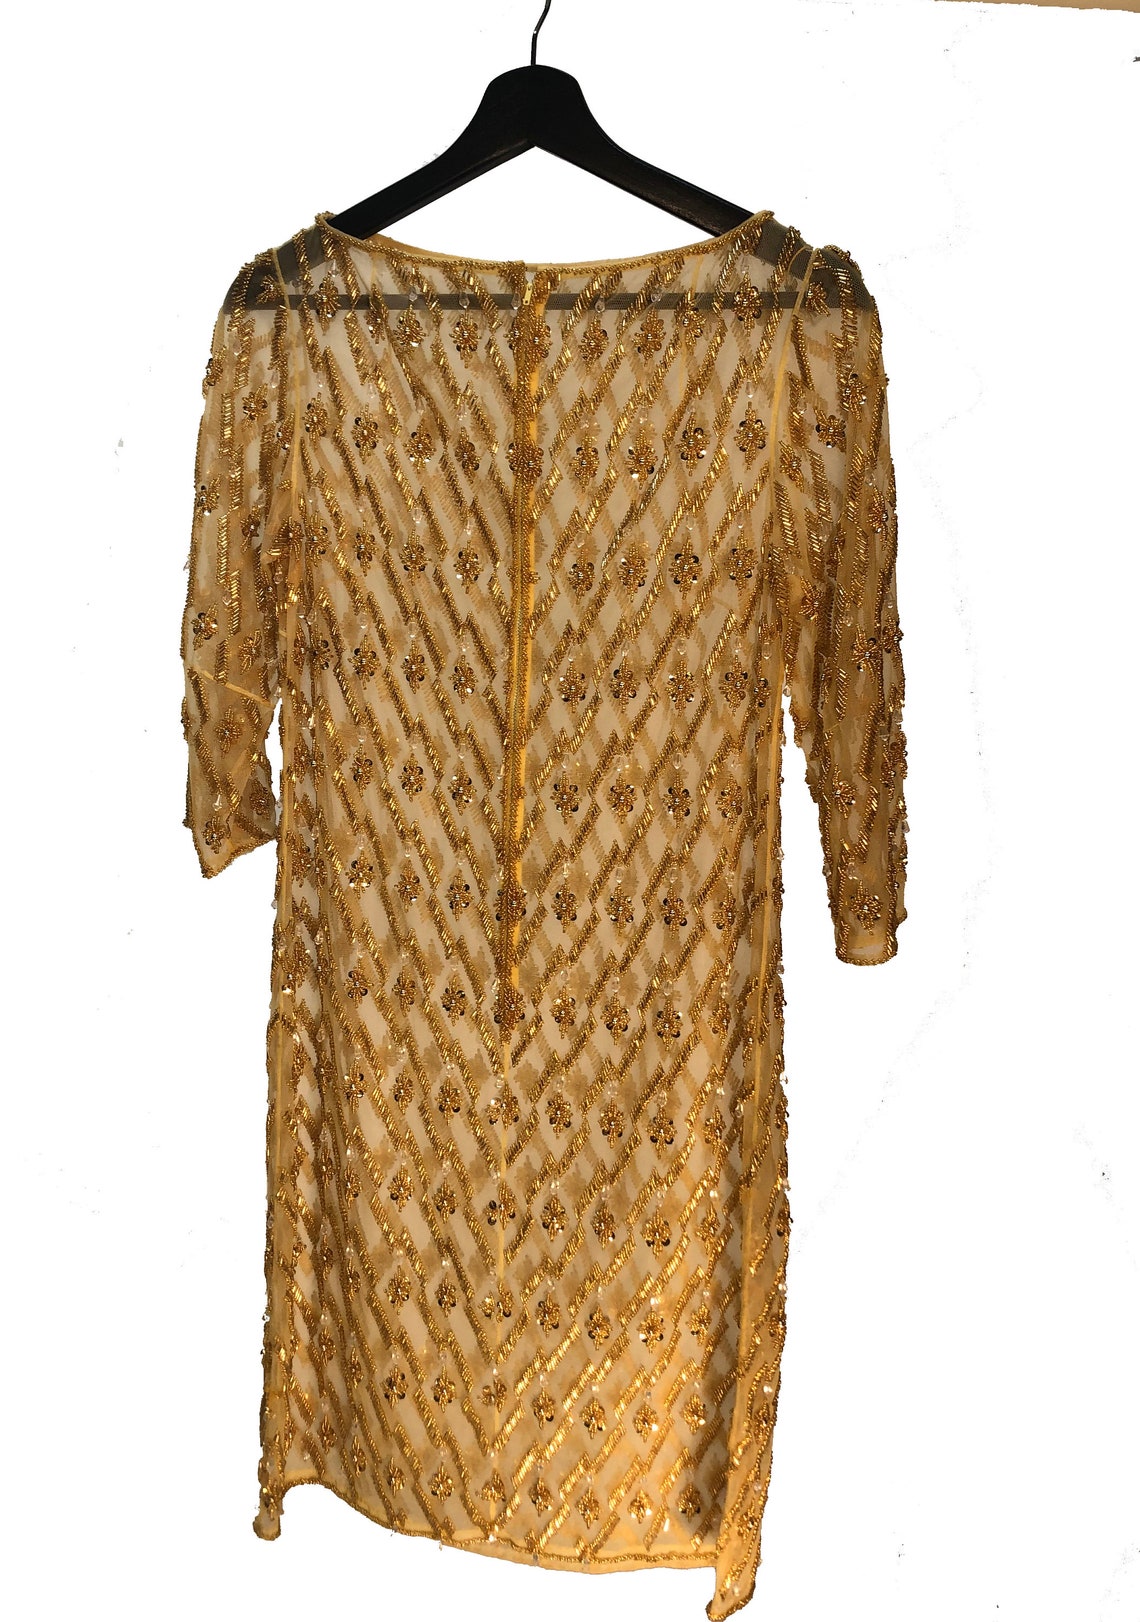 Heavy 1920s Gold Sheer Beaded Dress 50s Jumping Jack Flash - Etsy